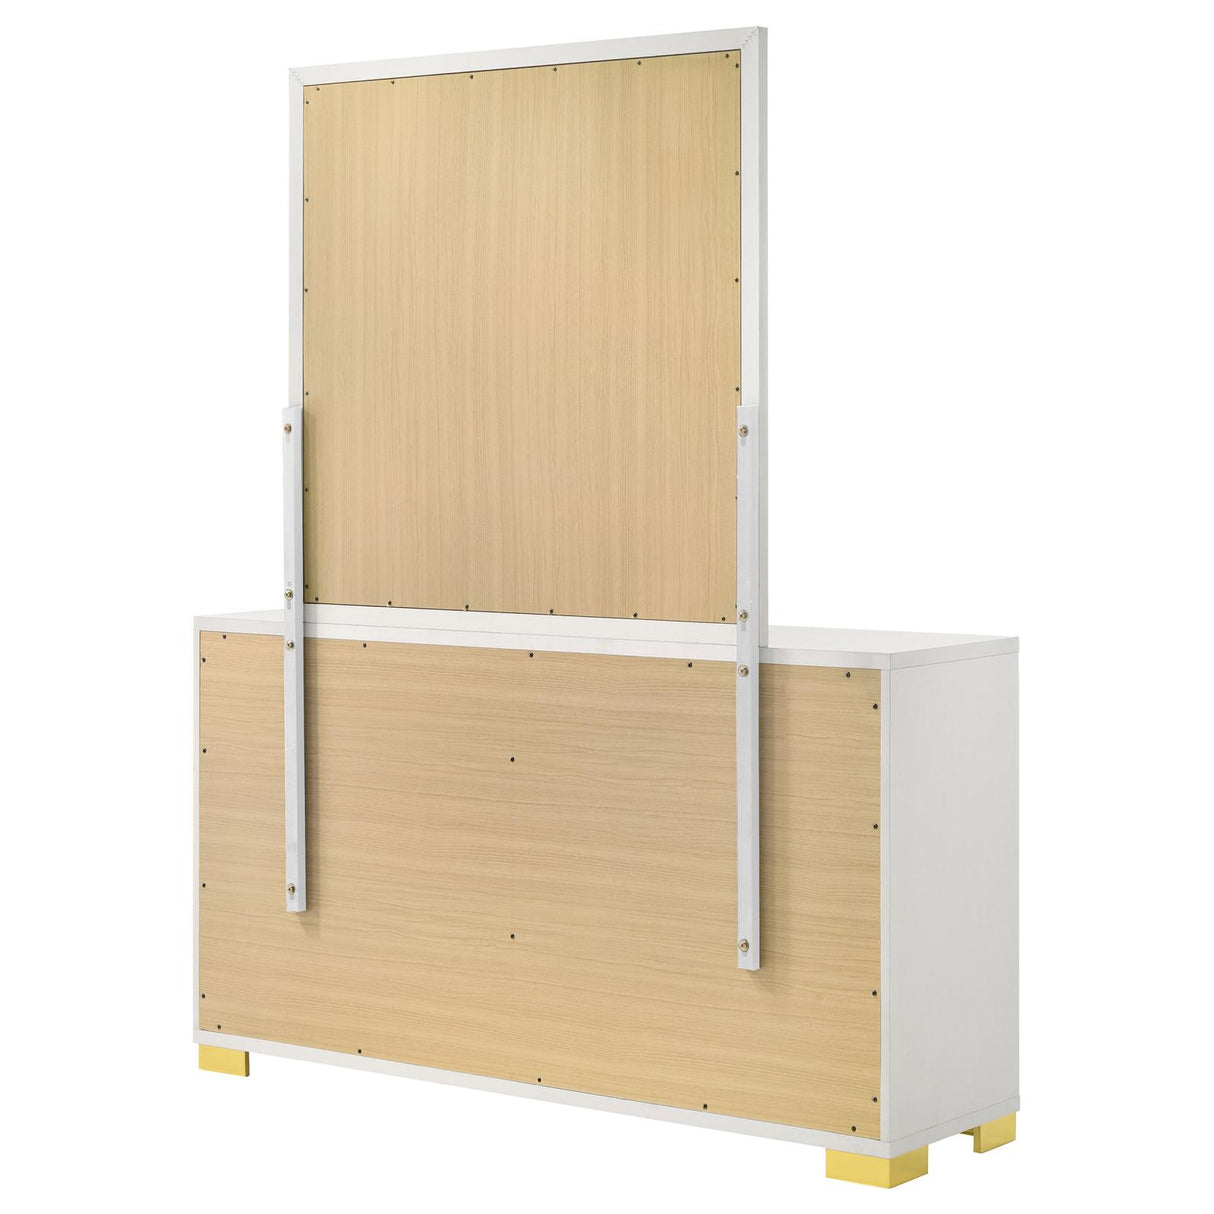 Marceline 6-drawer Dresser with Mirror White - 222933M - Luna Furniture